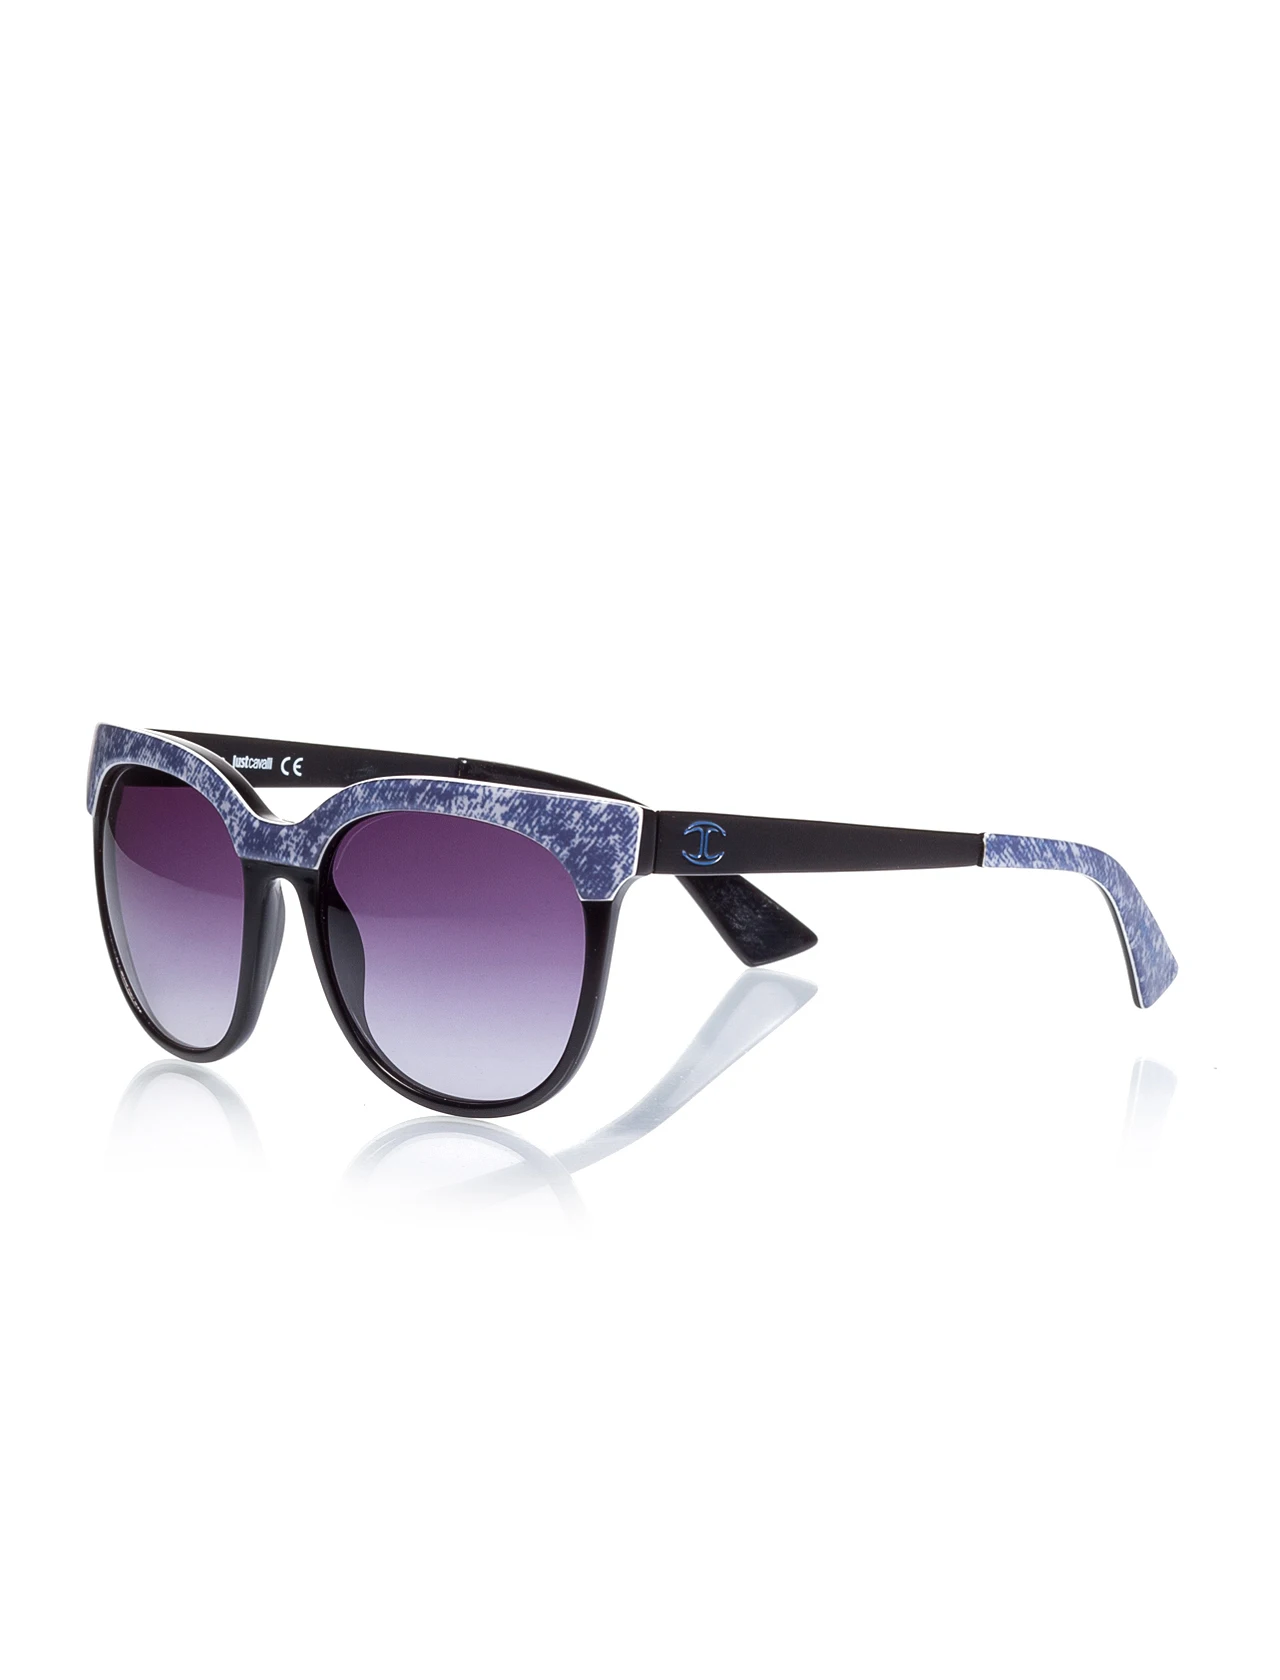 

Women's sunglasses jc 501 05w bone black organic oval aval 54-18-140 just cavalli